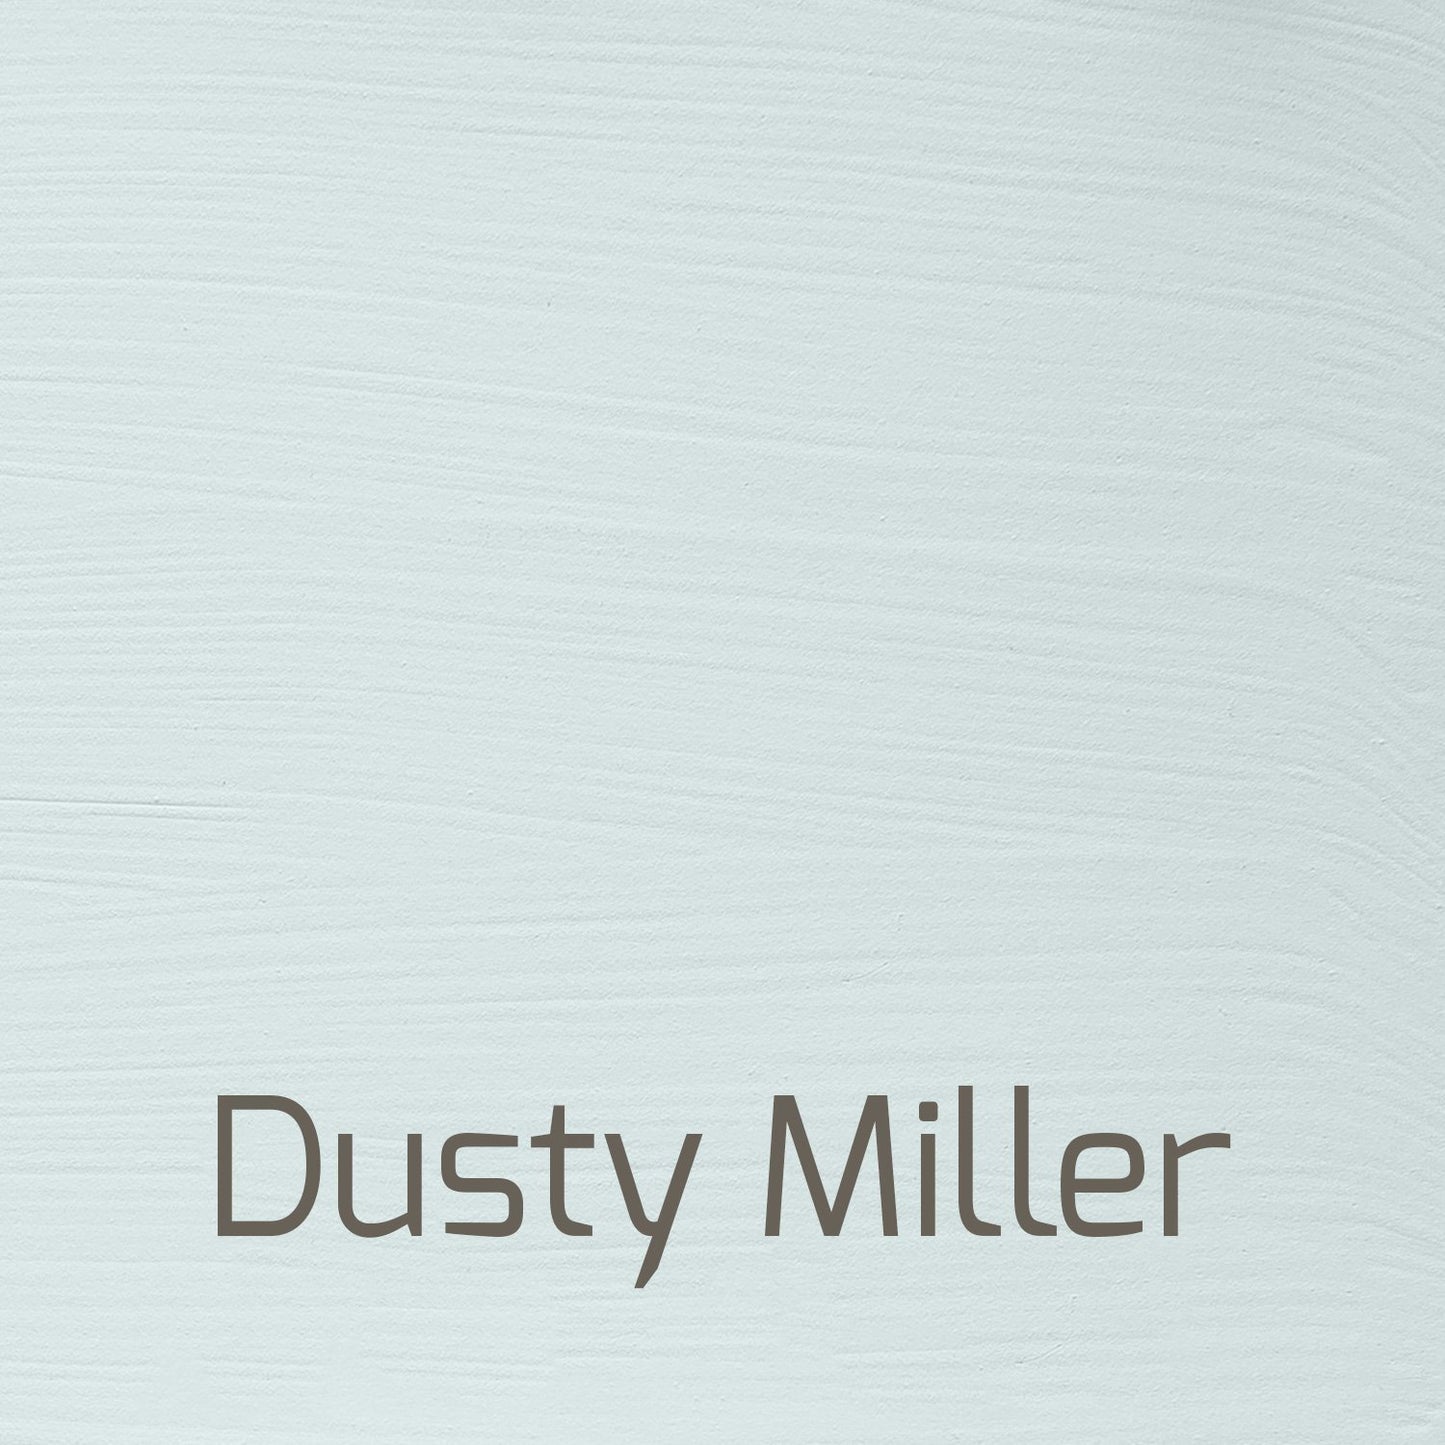 Dusty Miller - Vintage-Vintage-Autentico Paint Online